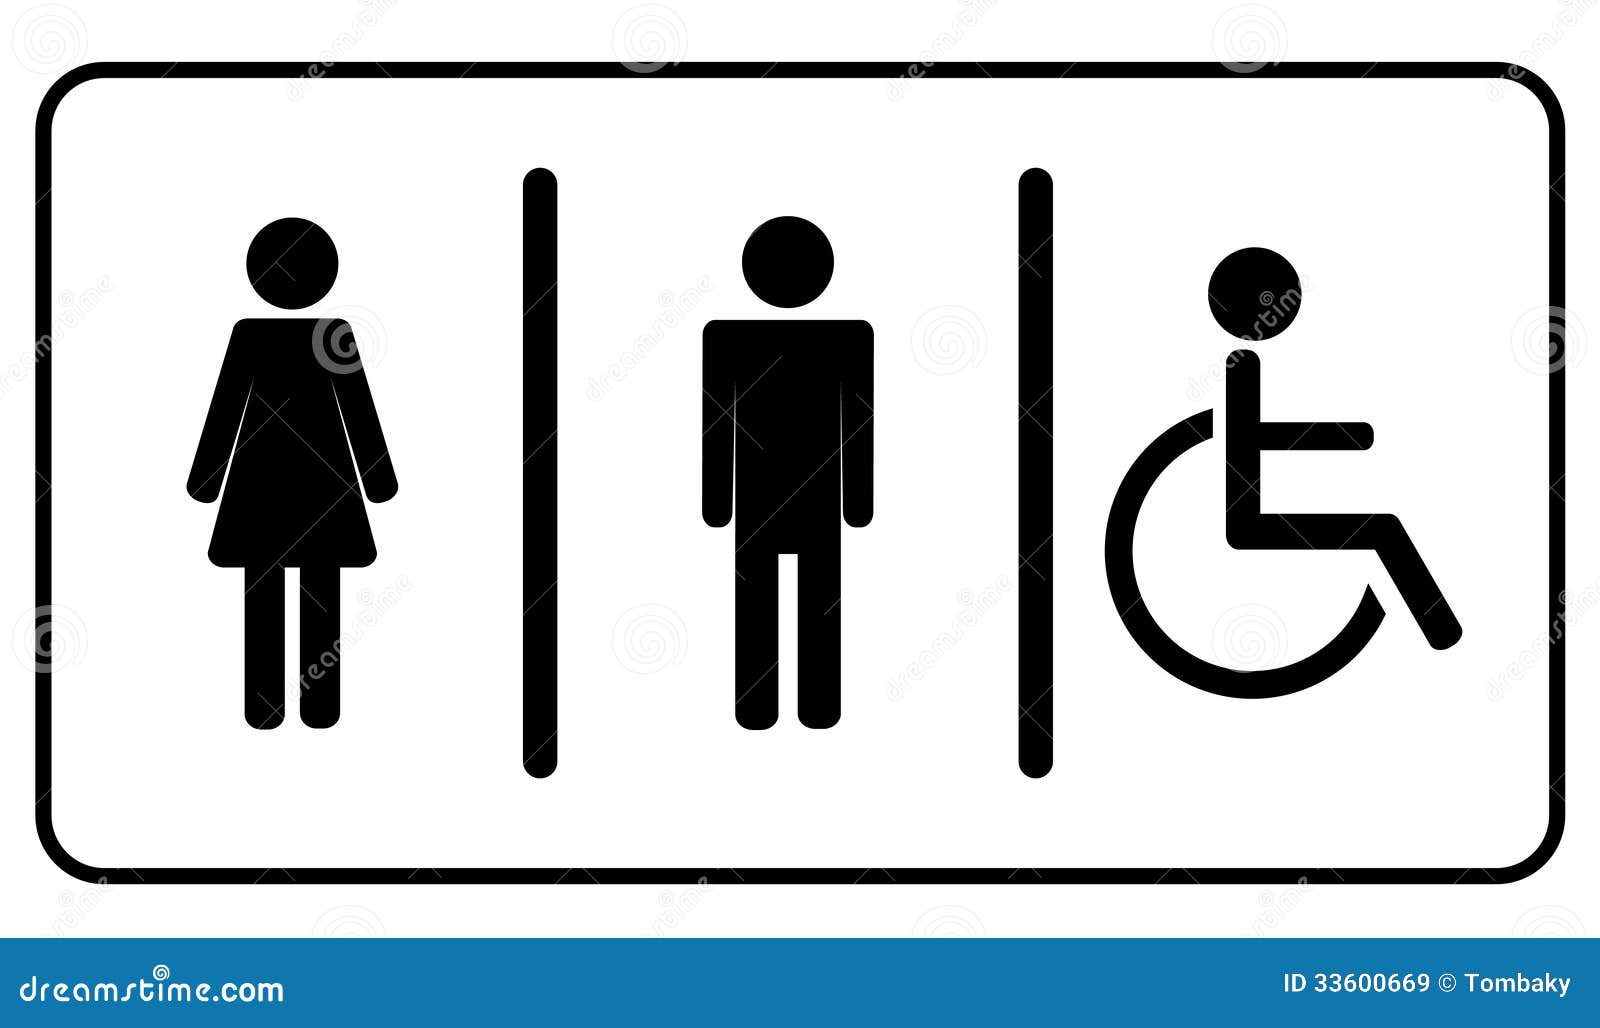  Symbole  De Toilette  De Toilettes Illustration de Vecteur 